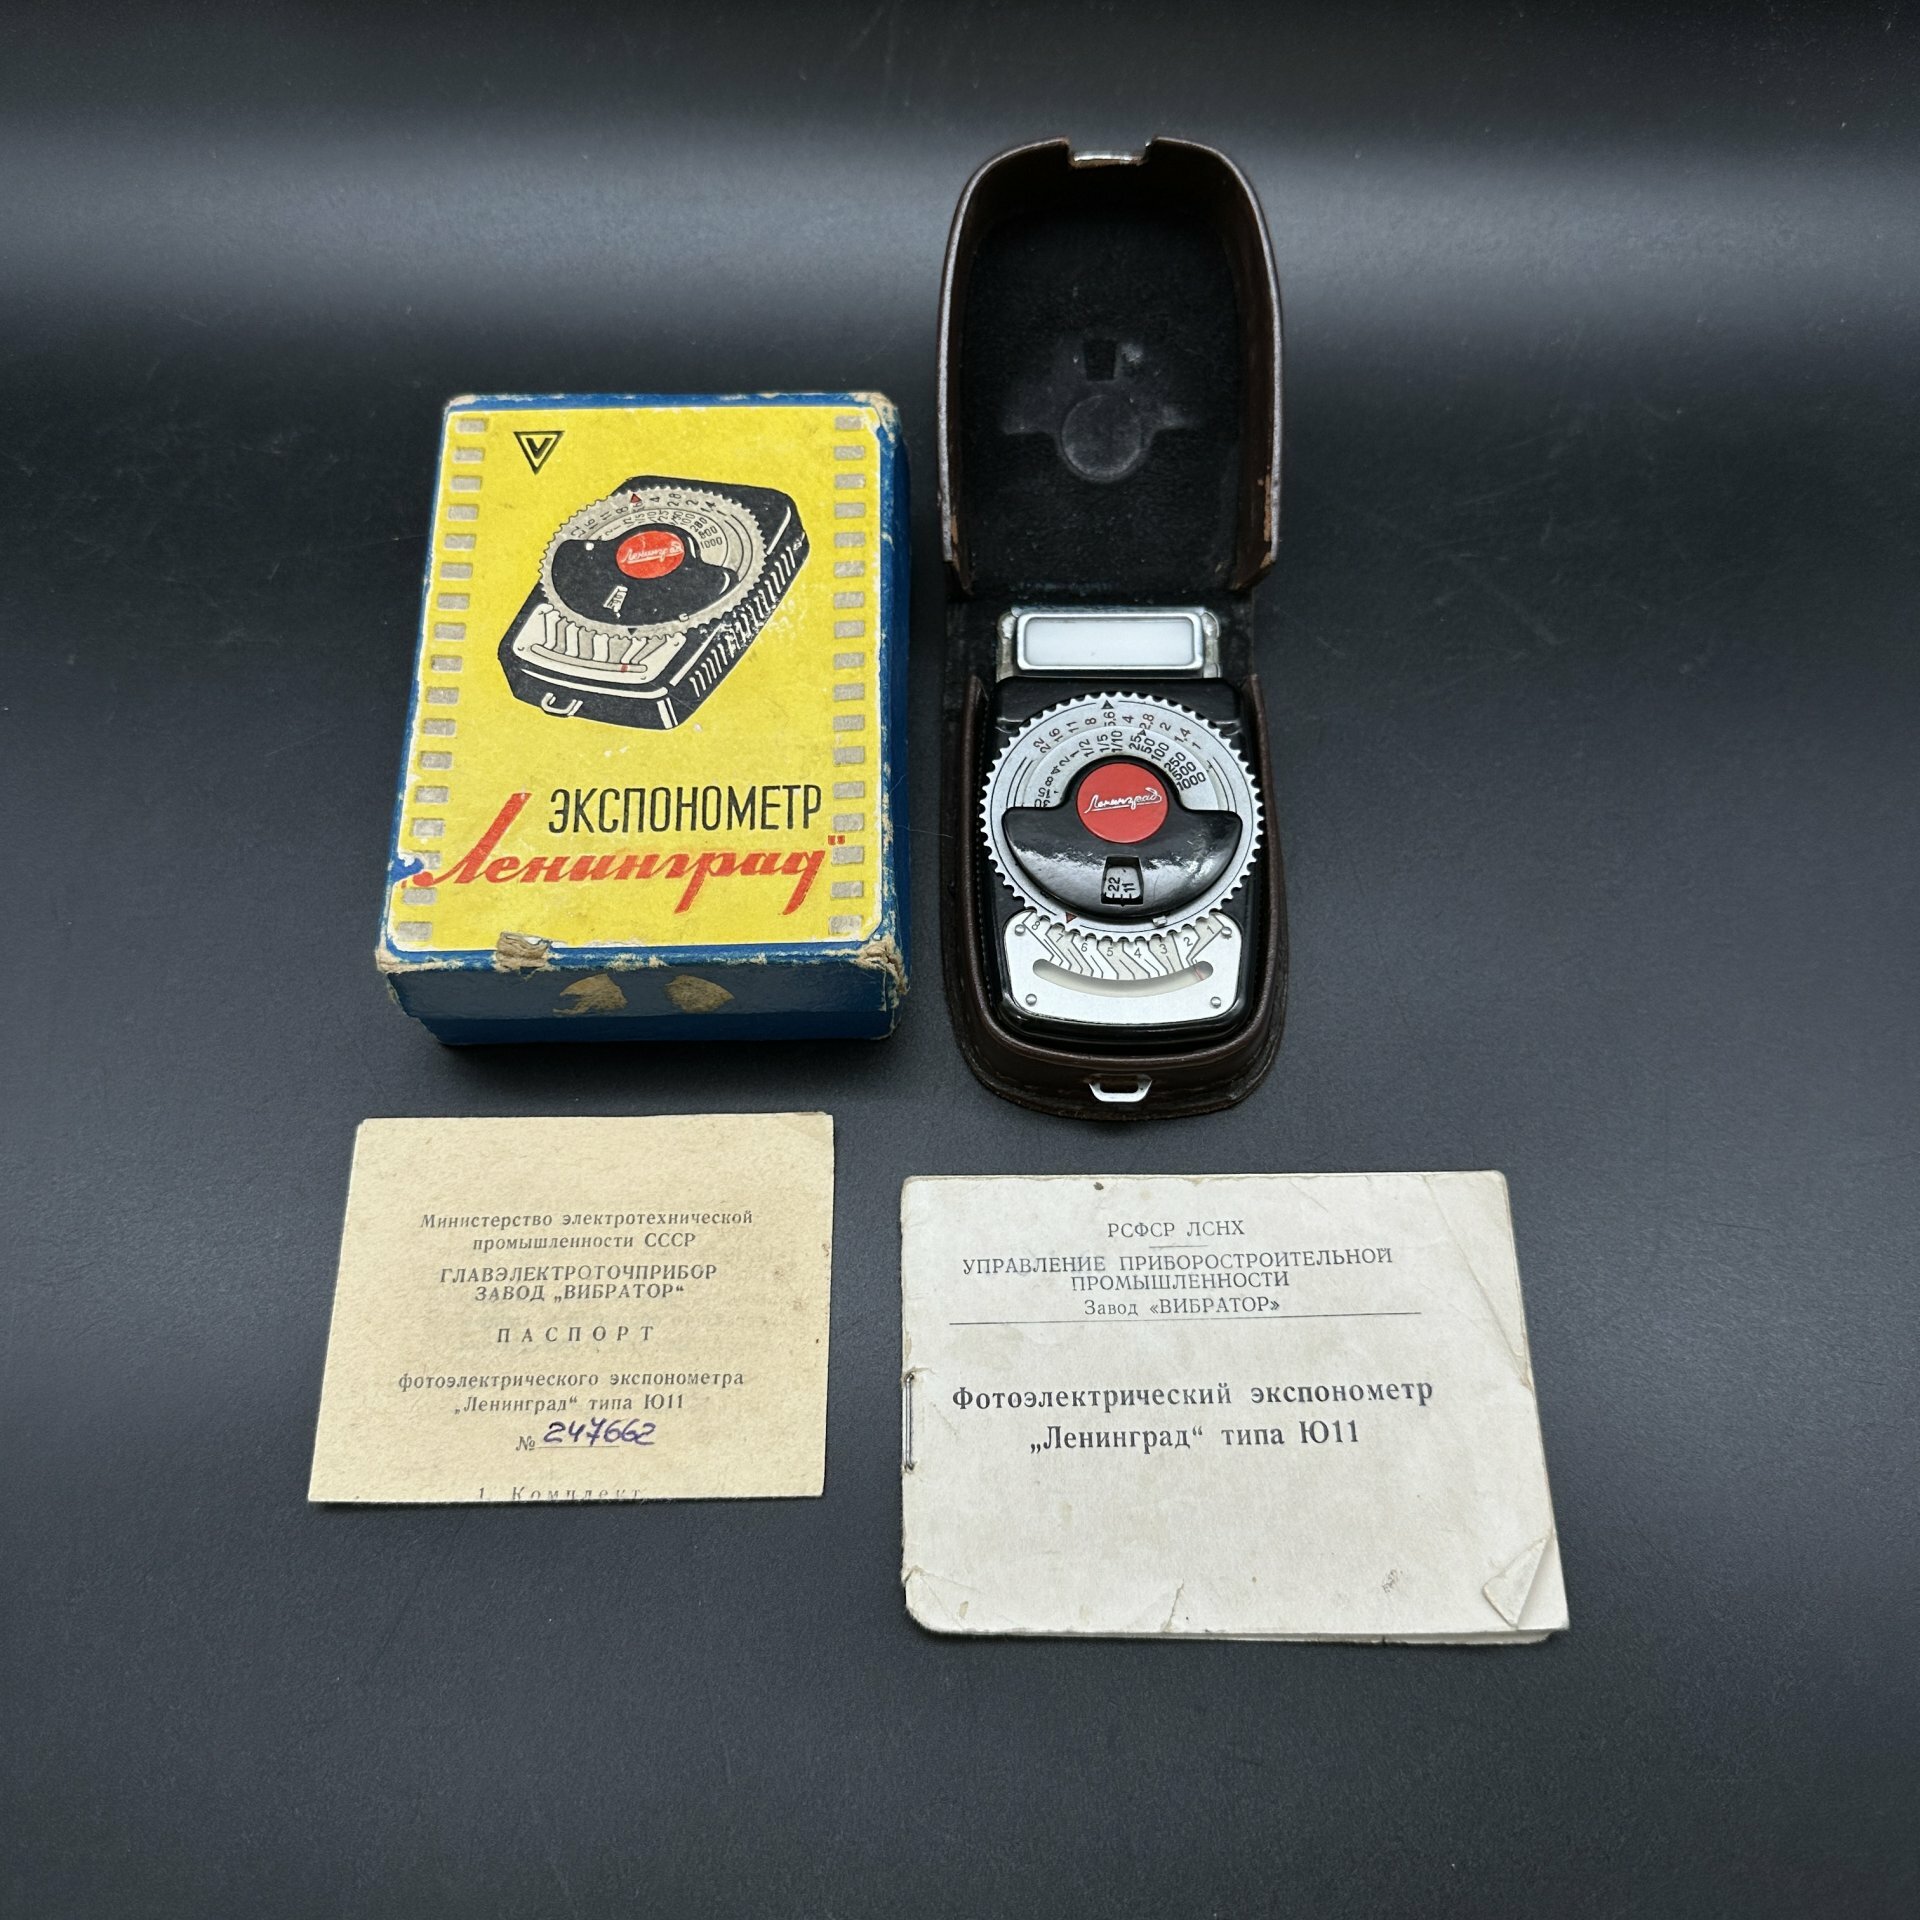 Фотоэлектрический экспонометр "Ленинград" (типа Ю11) в оригинальной коробке